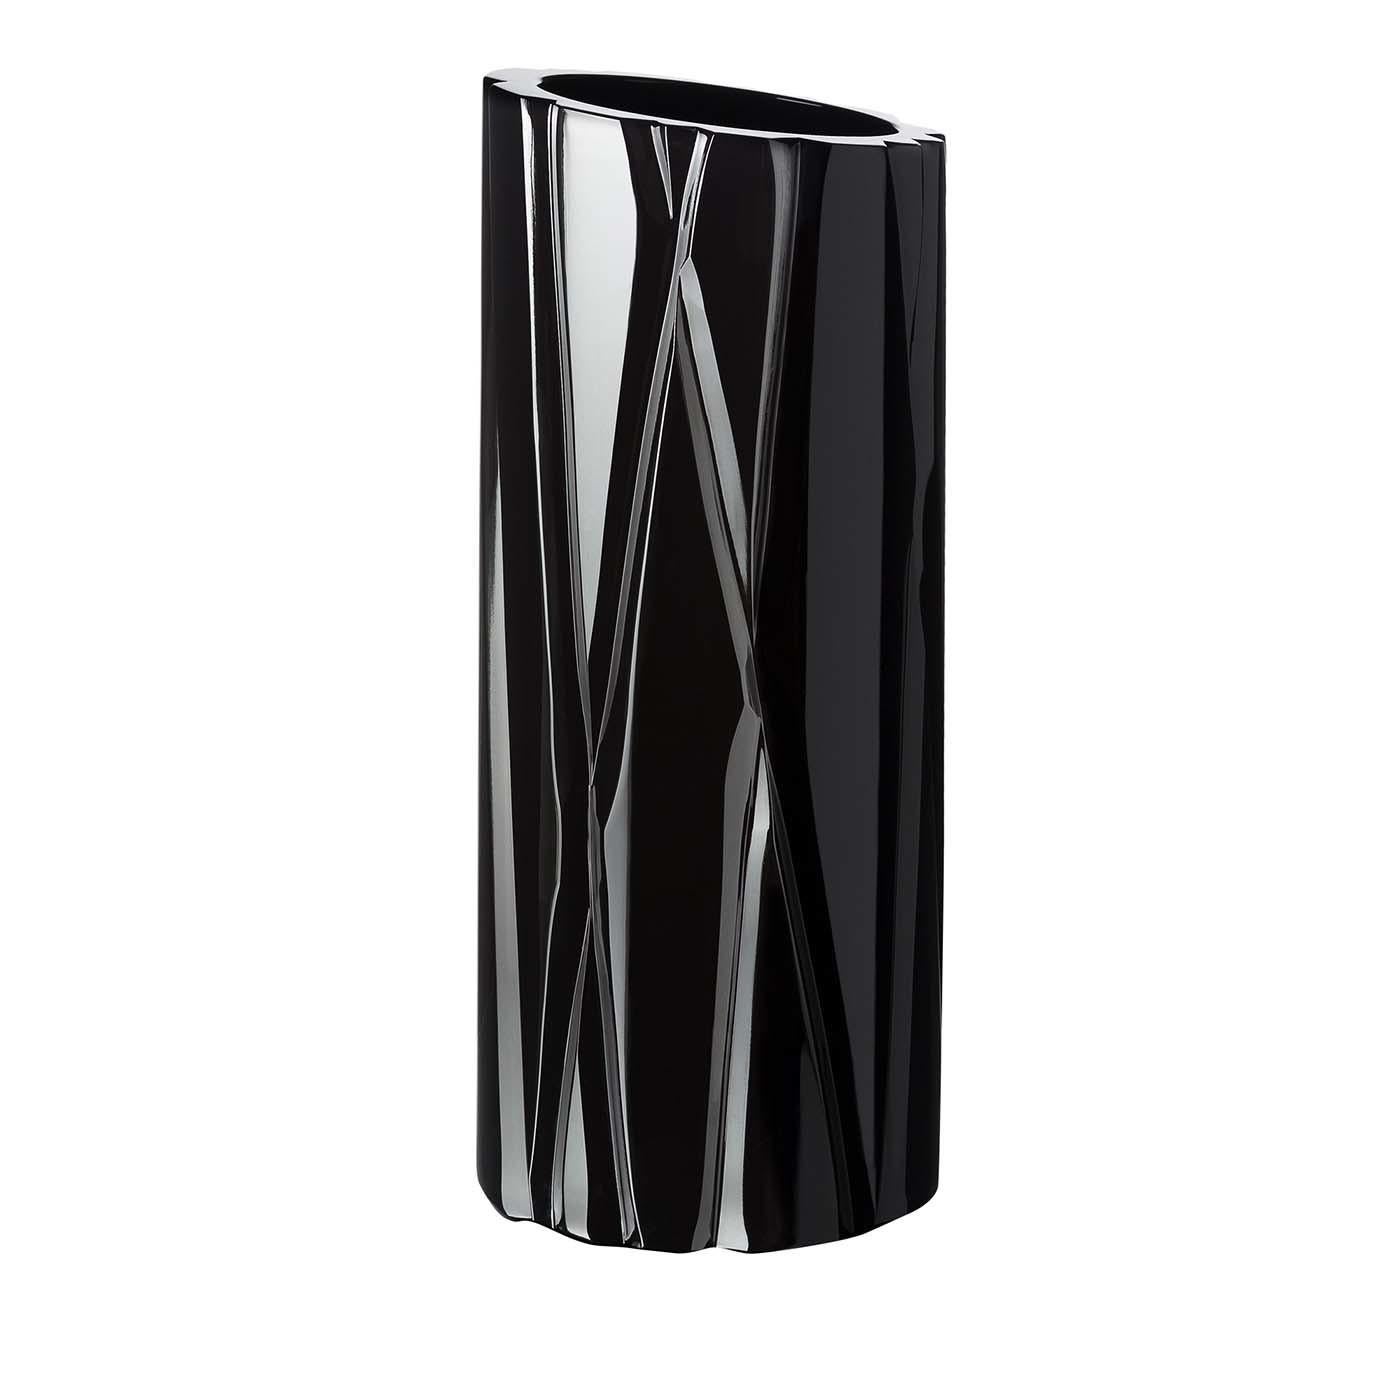 Als Teil der Skyline-Kollektion ist diese Vase eine wunderbare Ergänzung für ein modernes Zuhause. Die elegante zylindrische Form mit der leicht diagonalen Öffnung und der atemberaubenden Textur der sich kreuzenden Linien, die eine dynamische